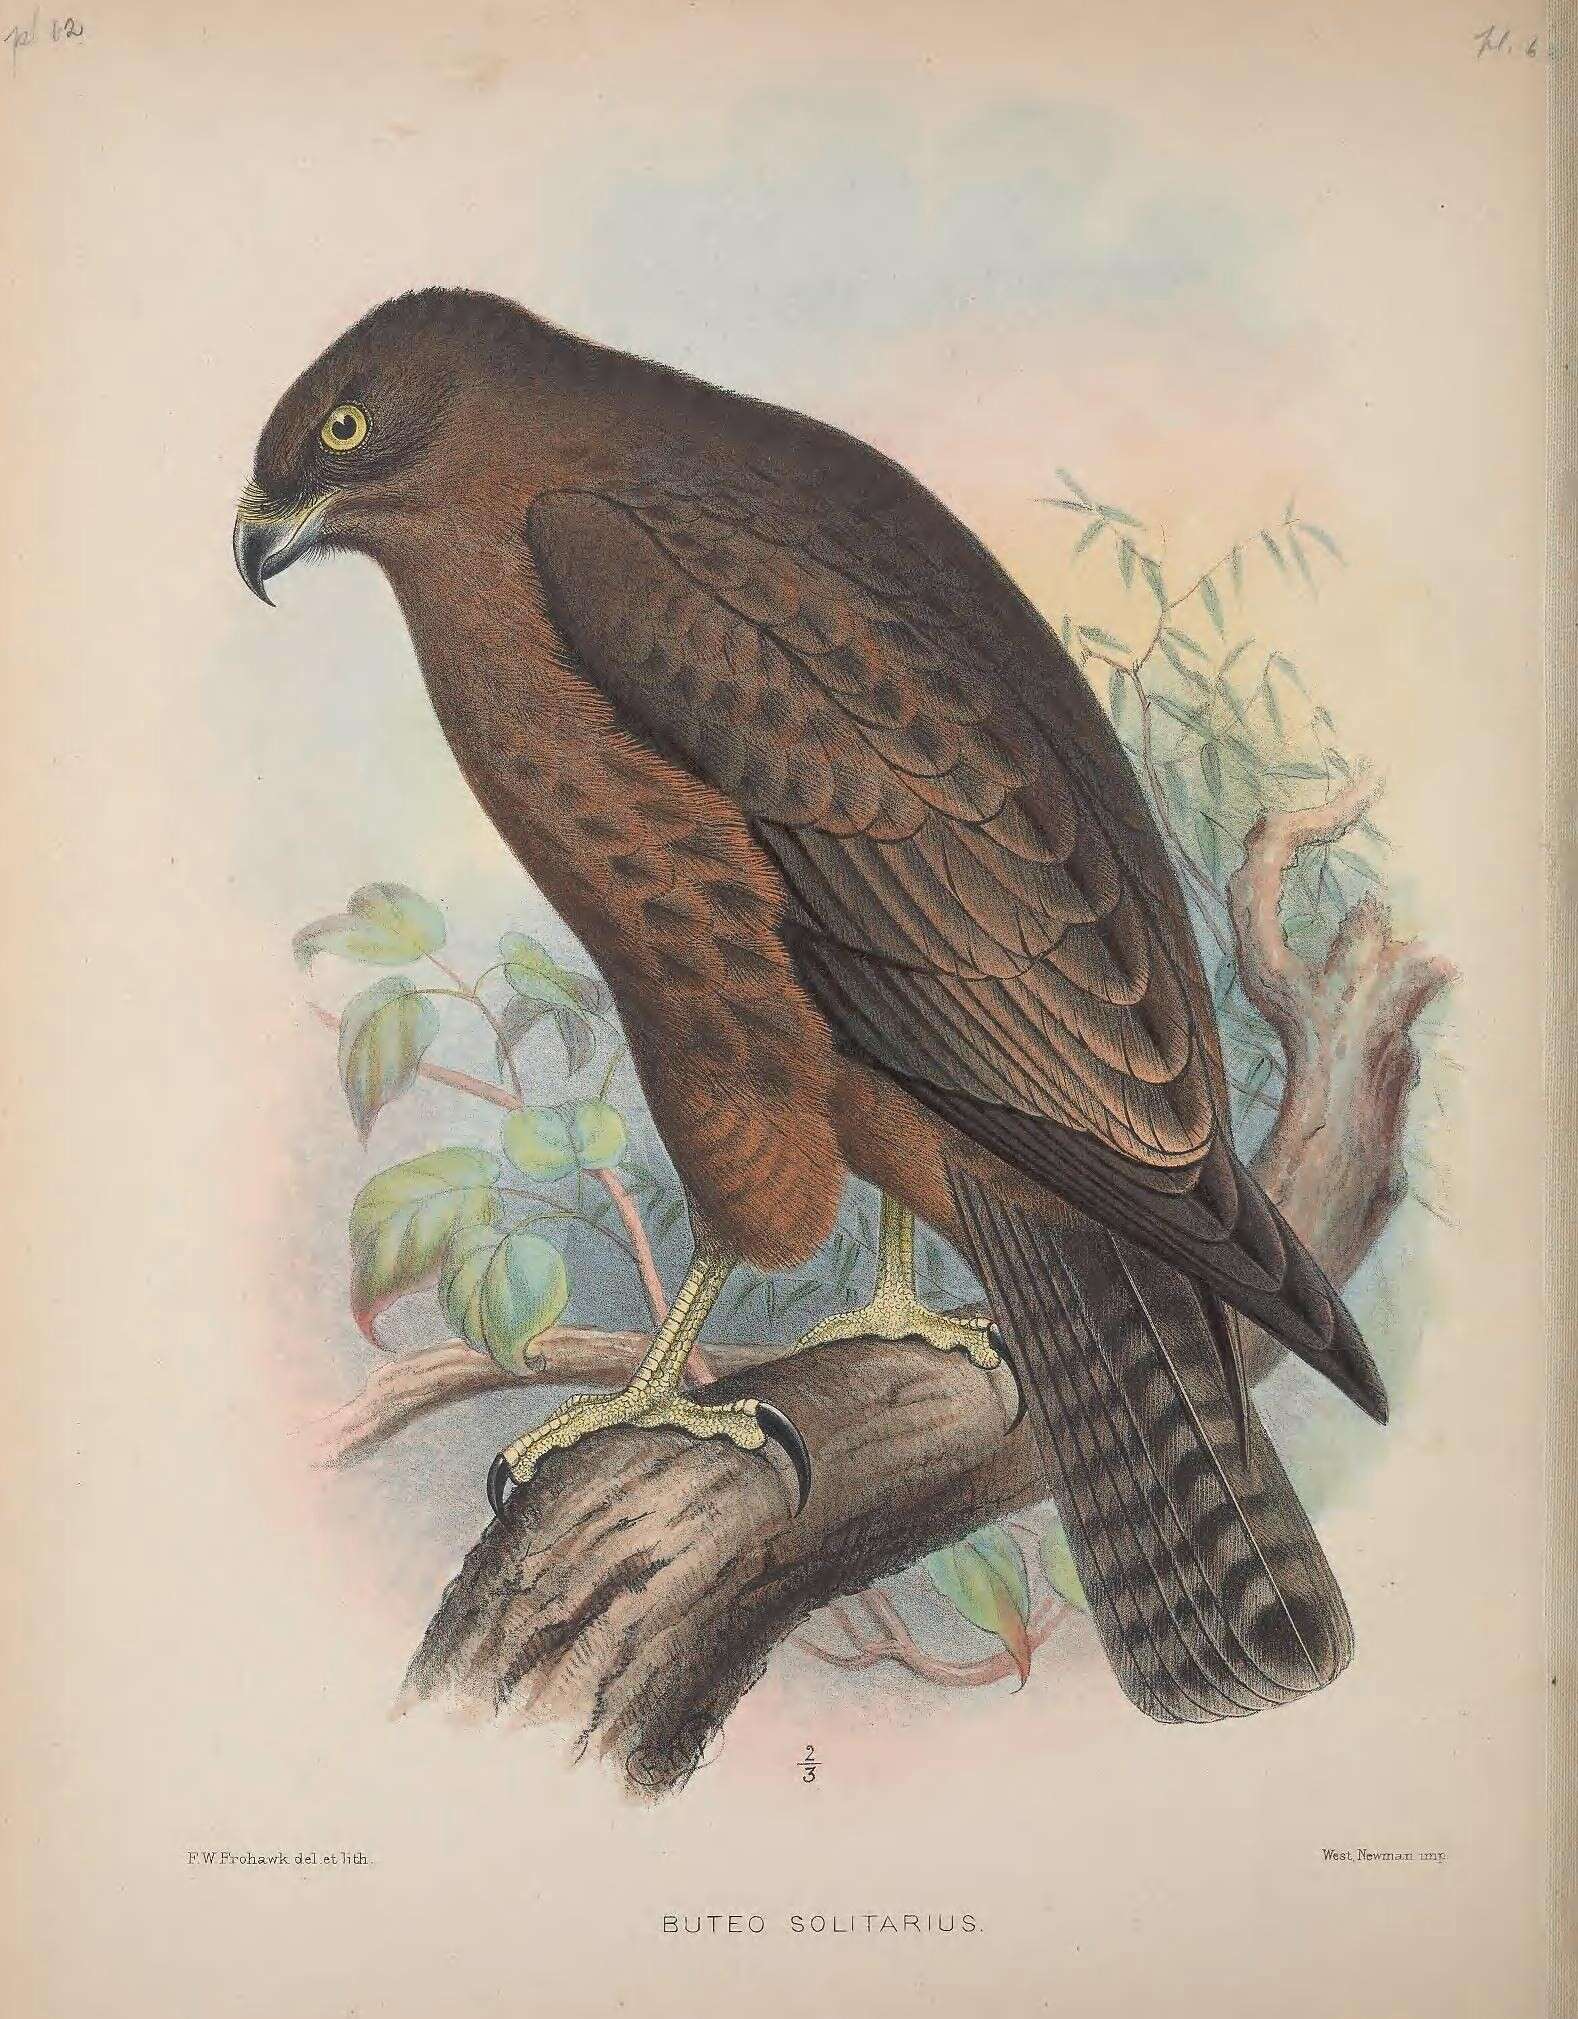 Image of Hawaiian Hawk